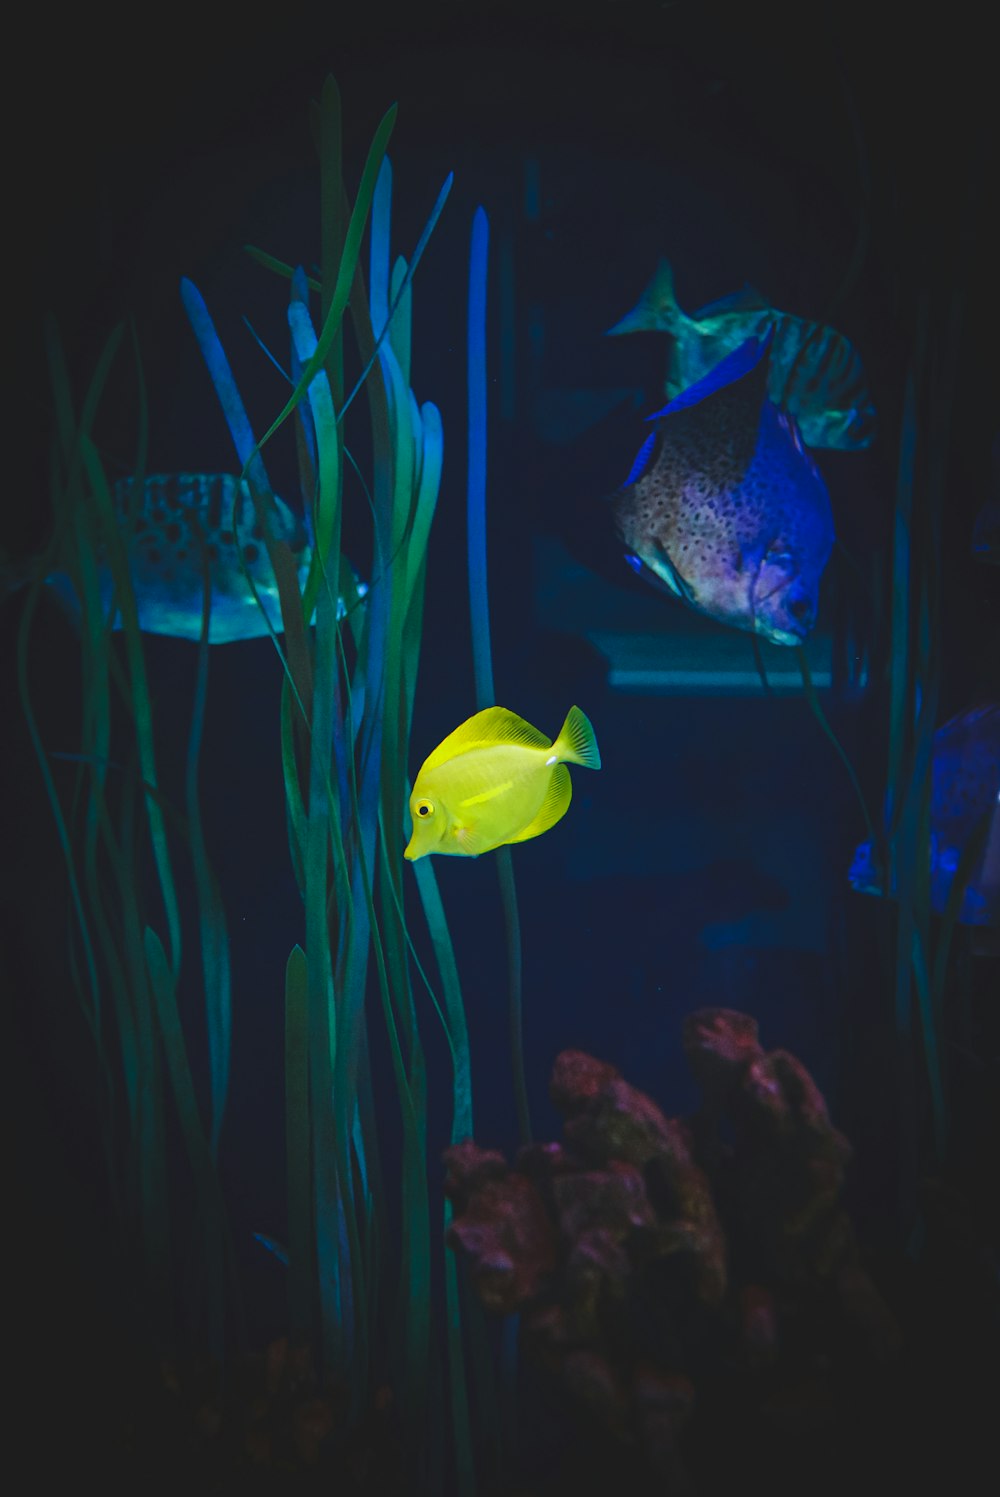 물고기 탱크에있는 노란 물고기